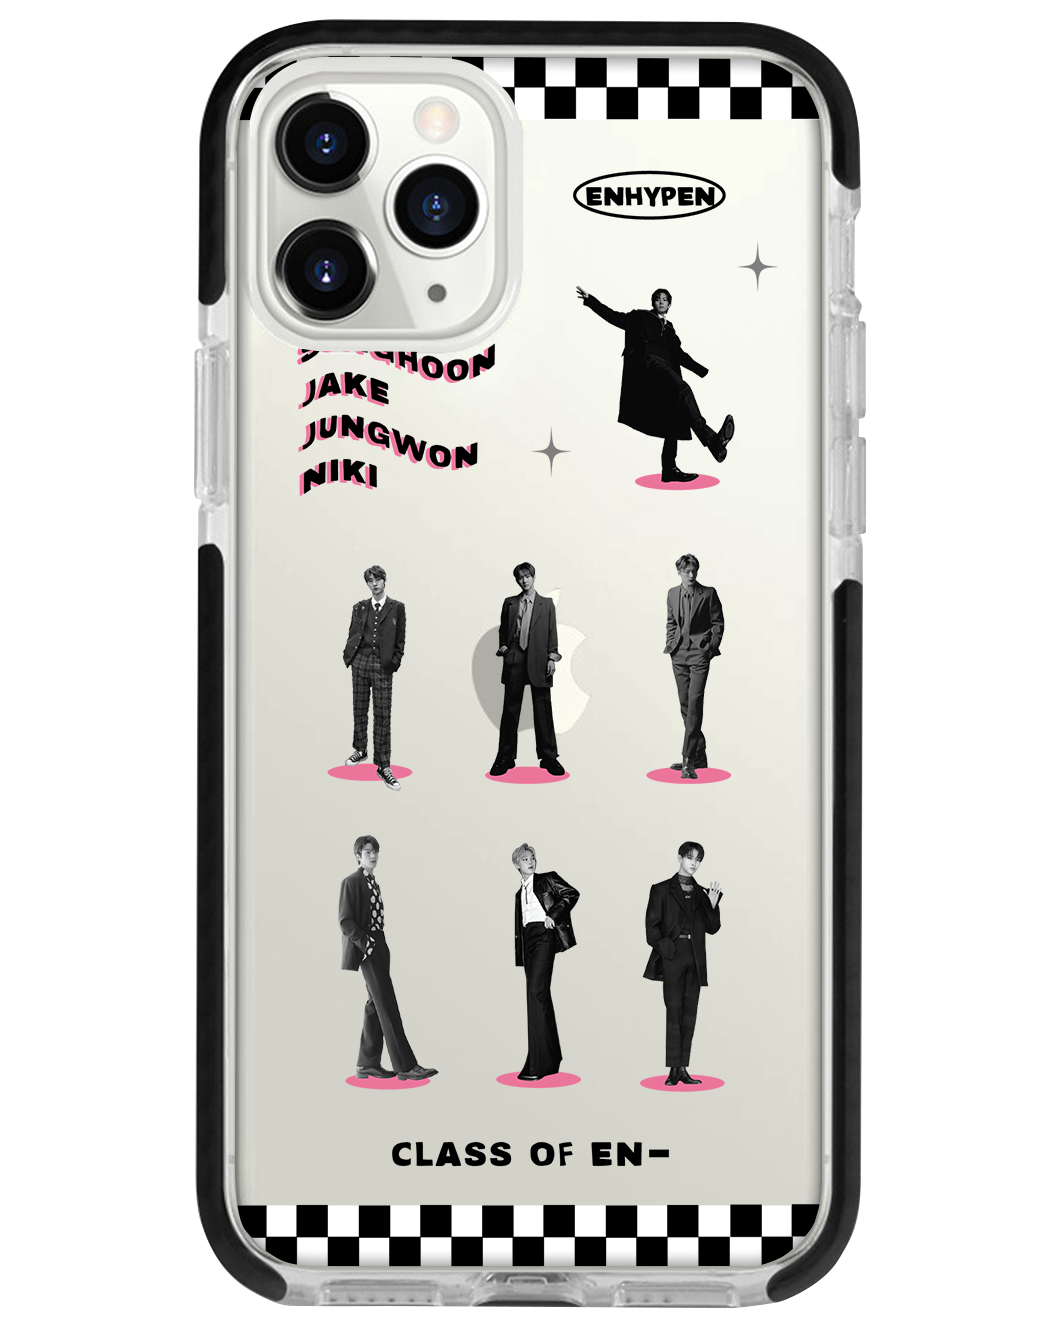 iPhone - Enhypen Class Of Enhypen